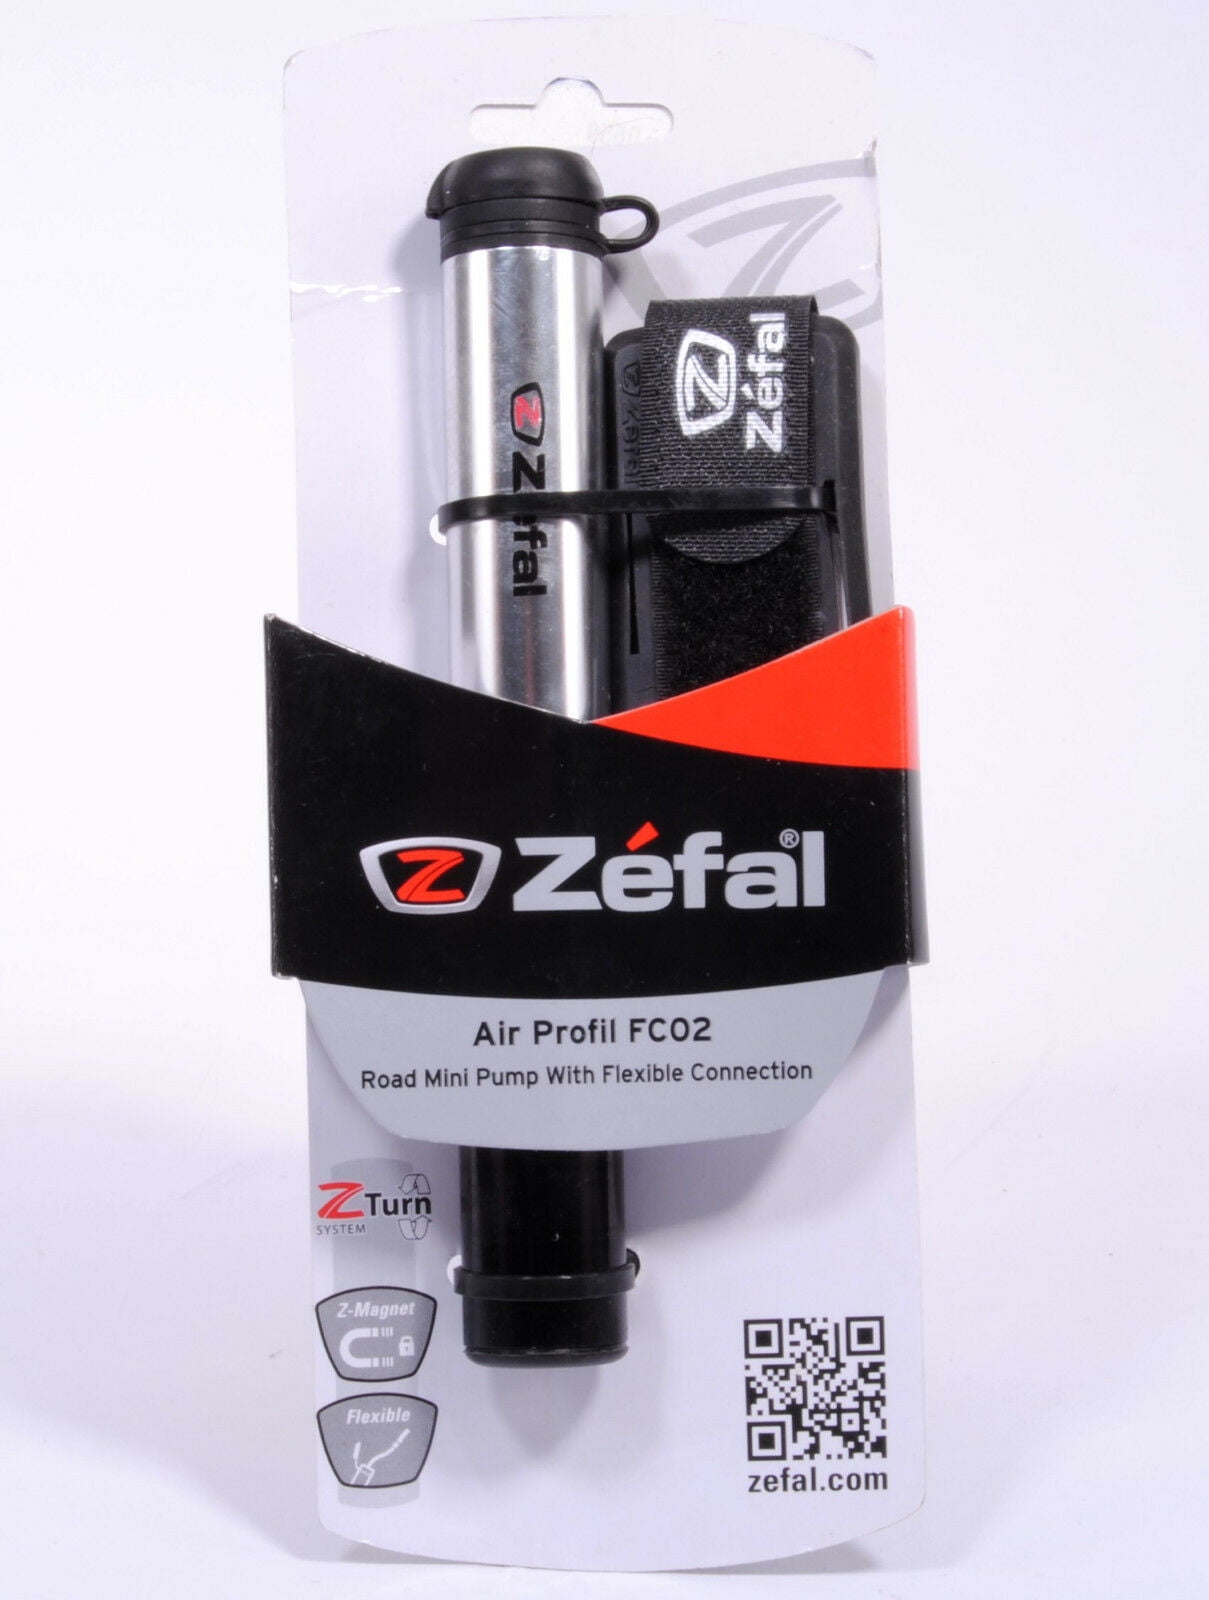 Zefal Air Profile FC02 